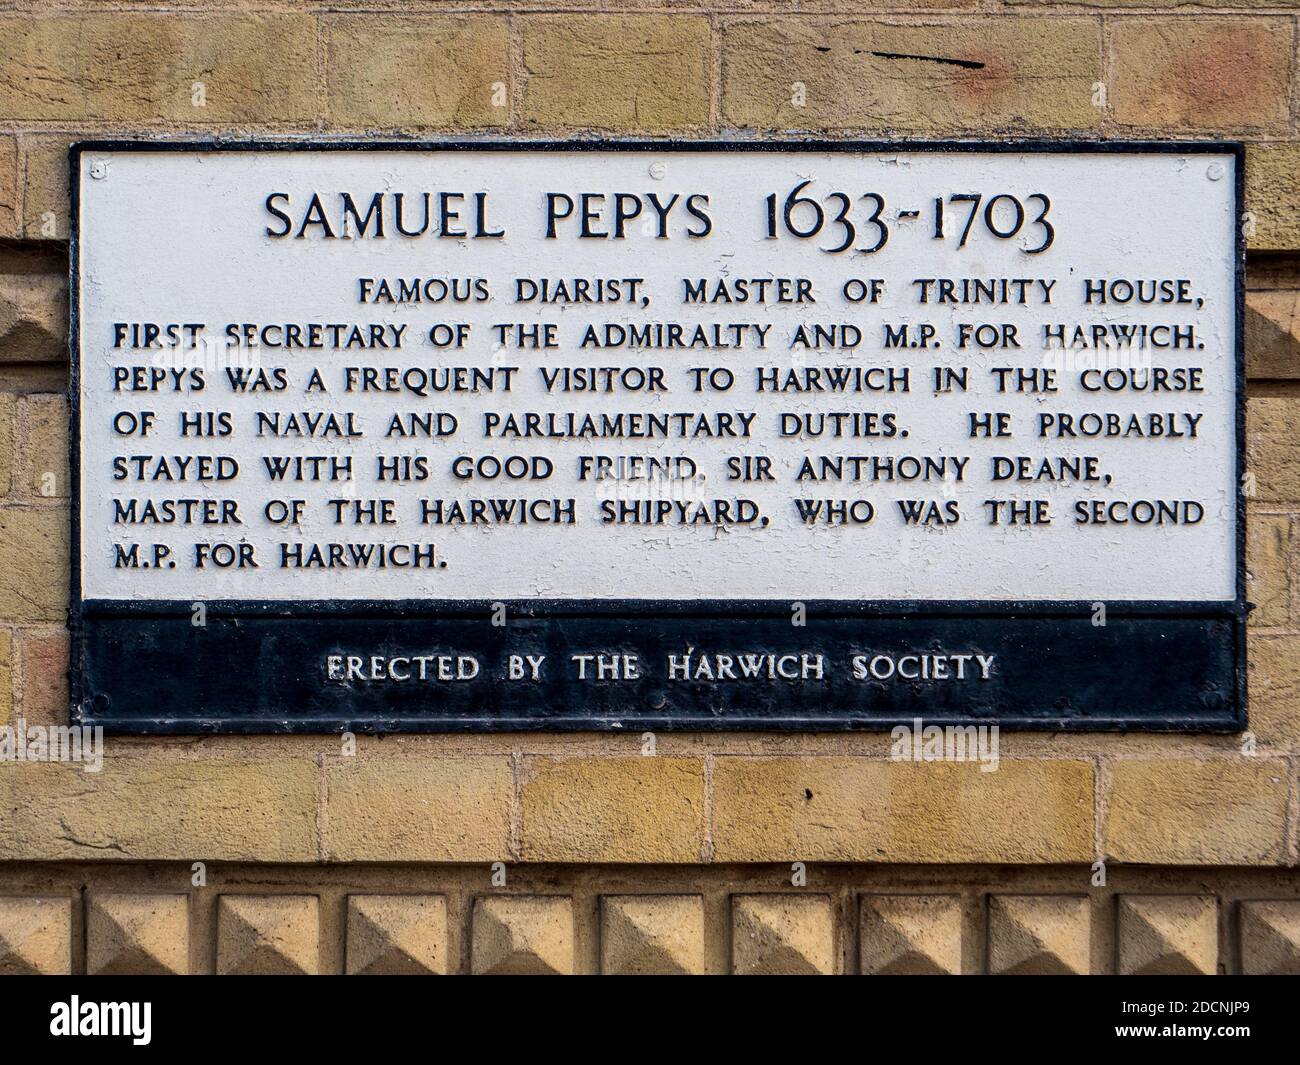 Samuel Pepys Harwich - Pepys, berühmter Diarist, Master of Trinity House, erster Sekretär der Admiralität und M.P. für Harwich - Harwich Society Plakette Stockfoto